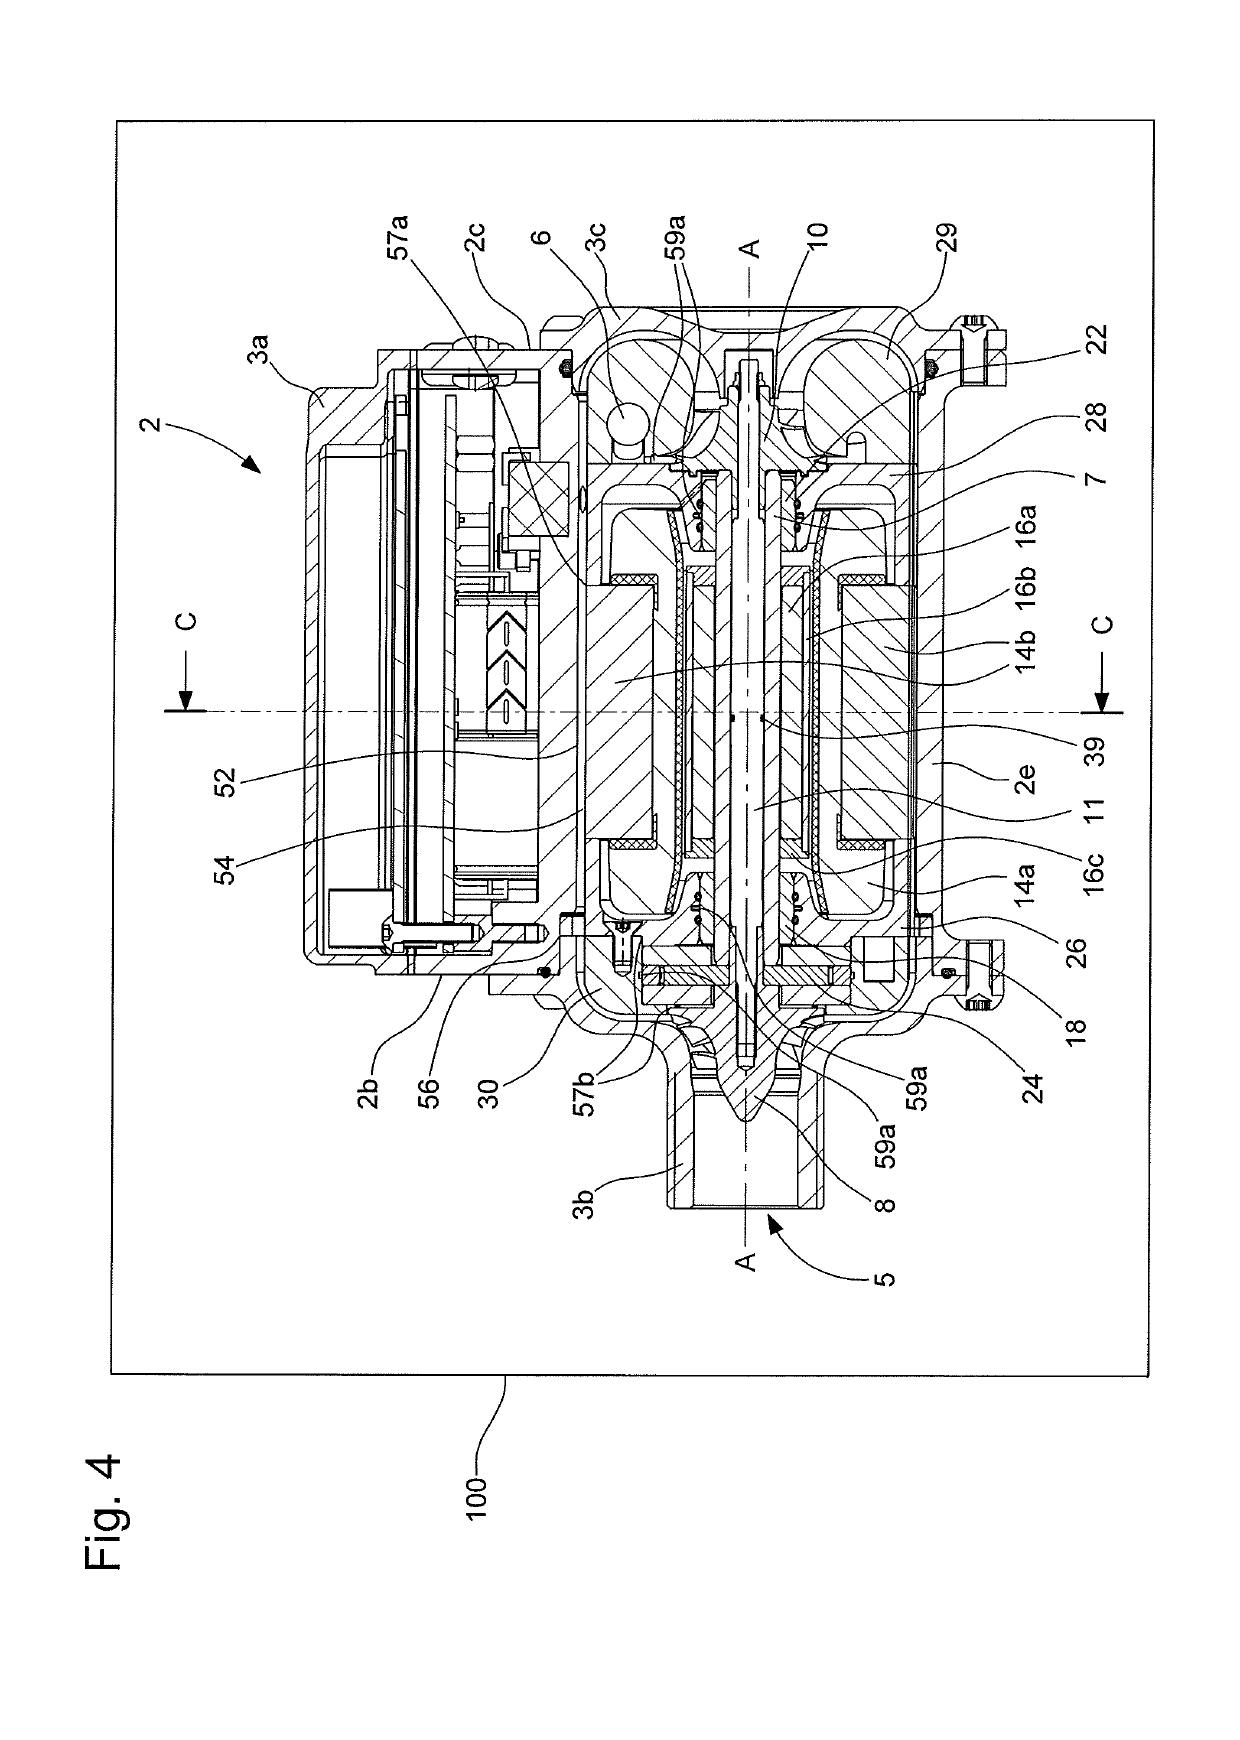 Heat pump comprising a fluid compressor